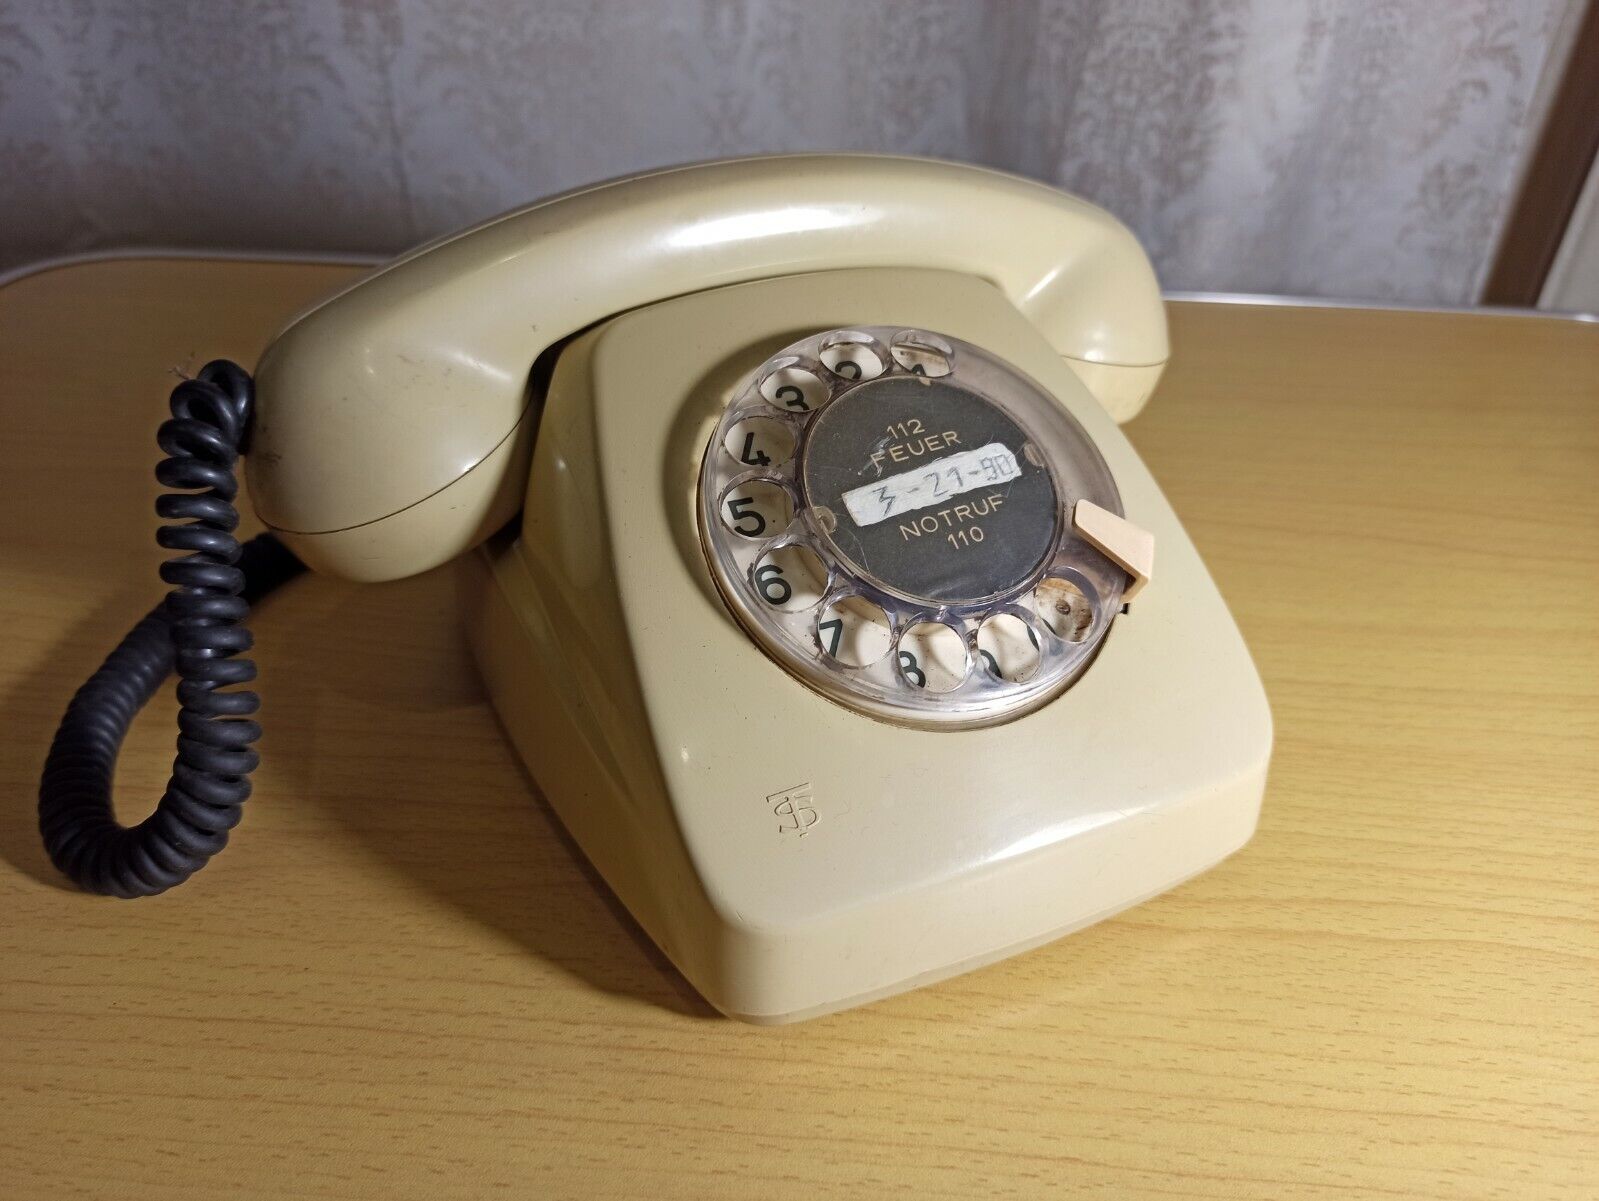  Vintage telephone Siemens 301